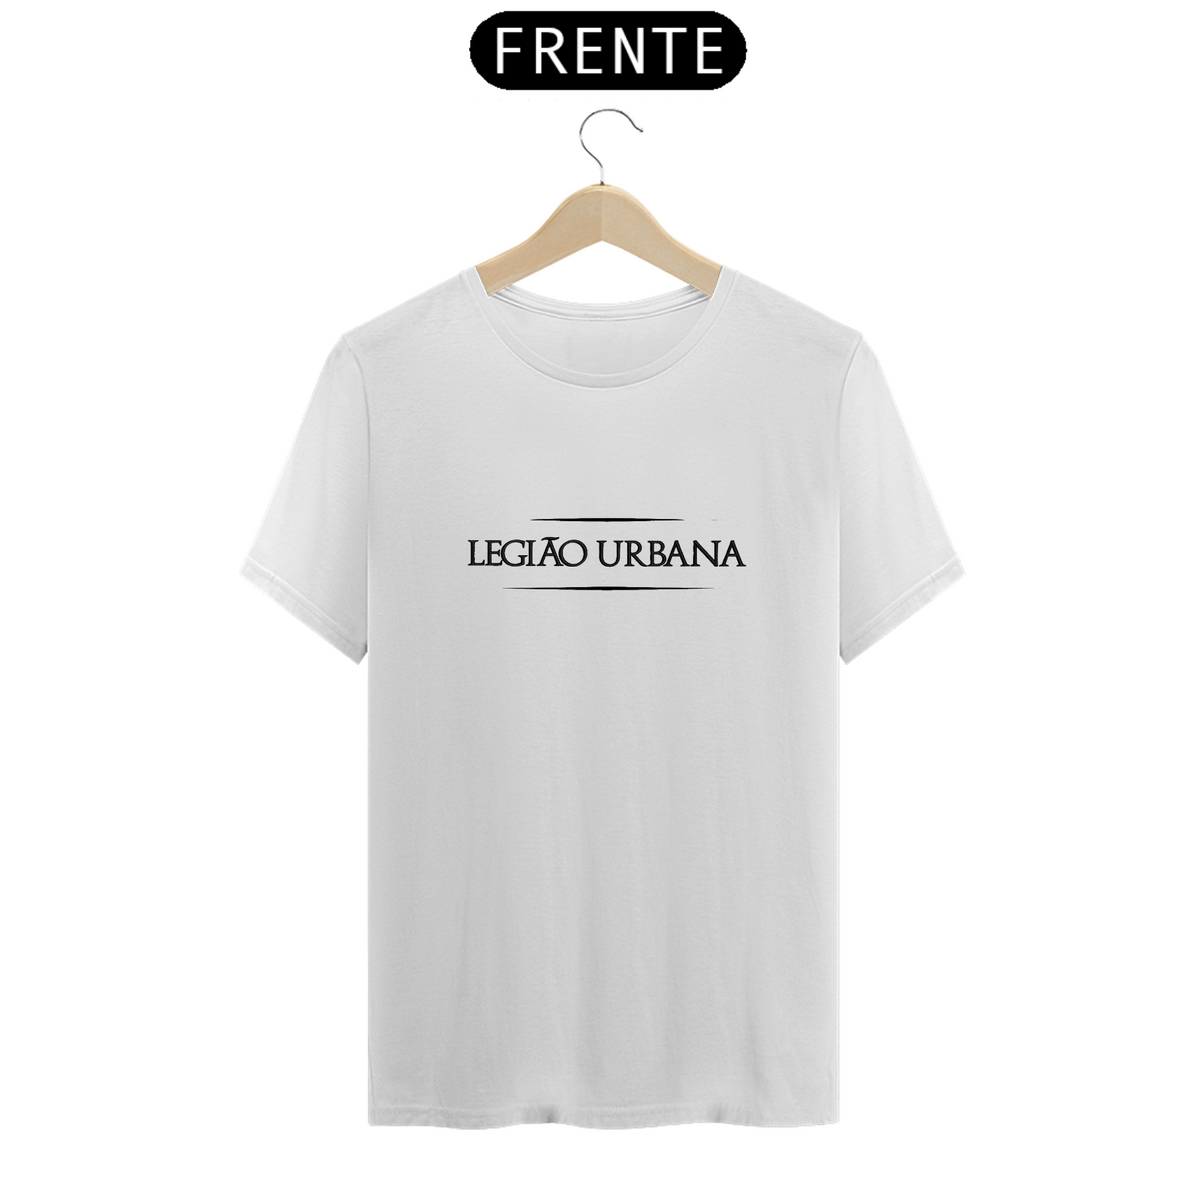 Nome do produto: Camiseta T-Shirt LEGIÃO URBANA